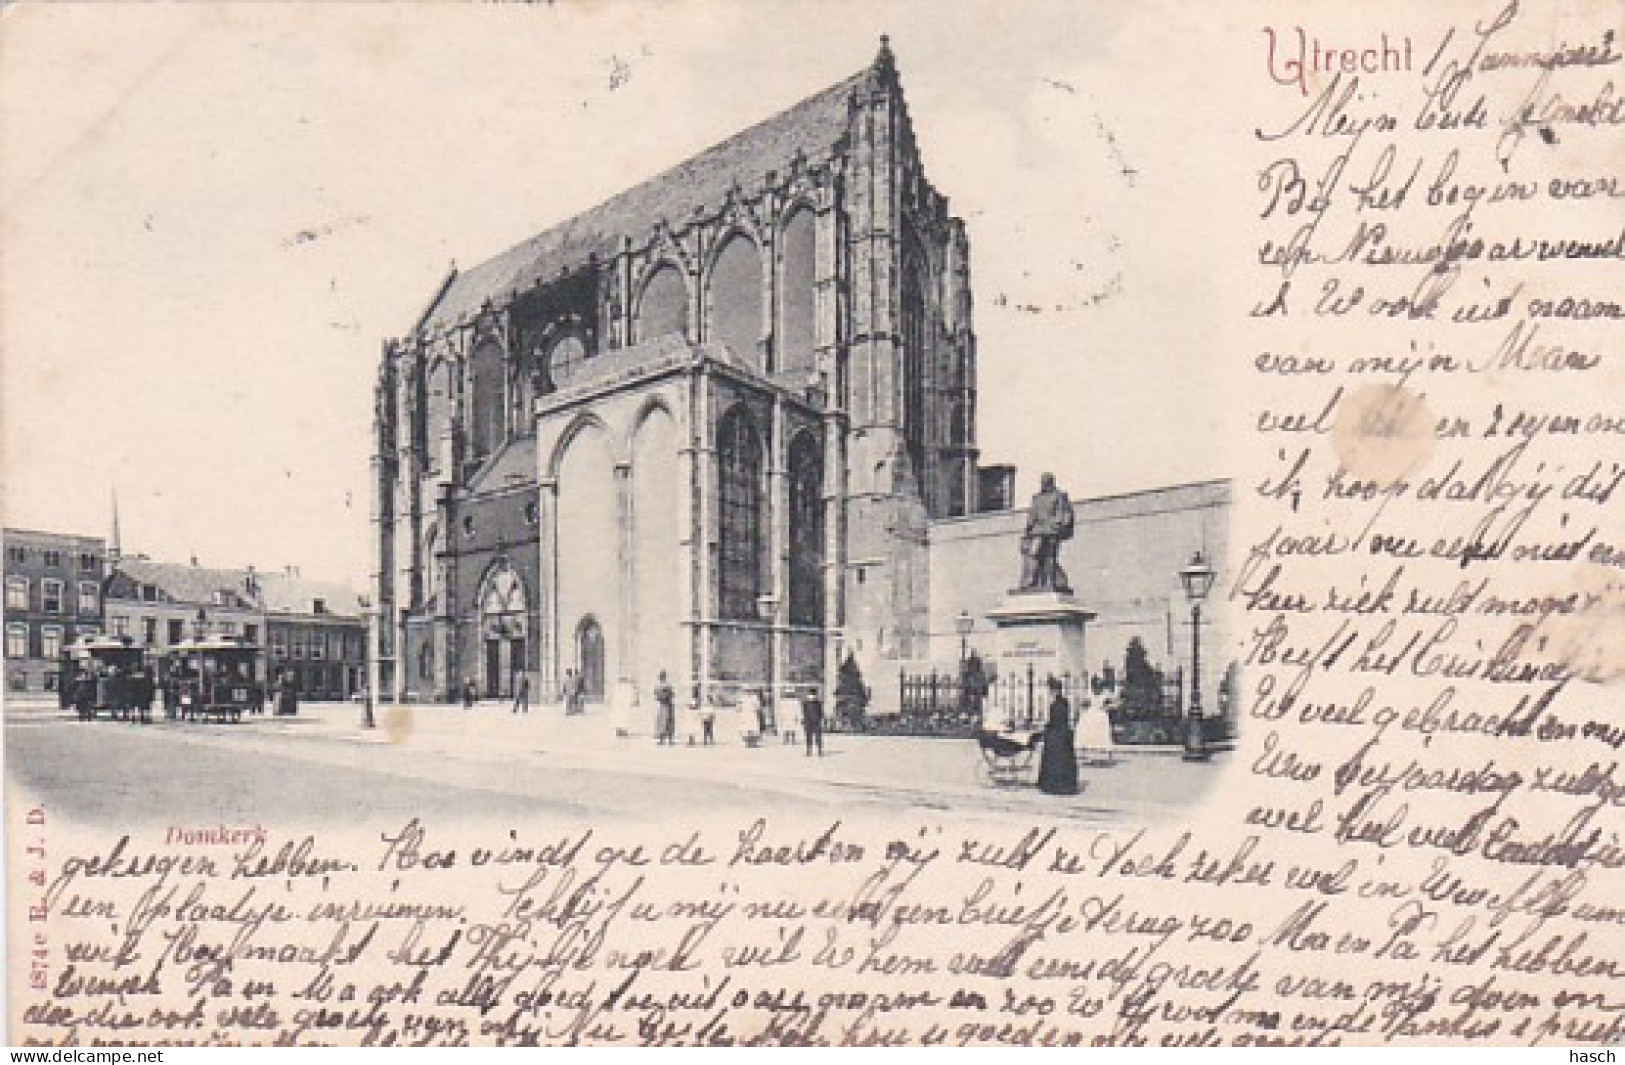 481894Utrecht, Domkerk (poststempel 1898)Met paardentram lijn 12)(kaart uit album)